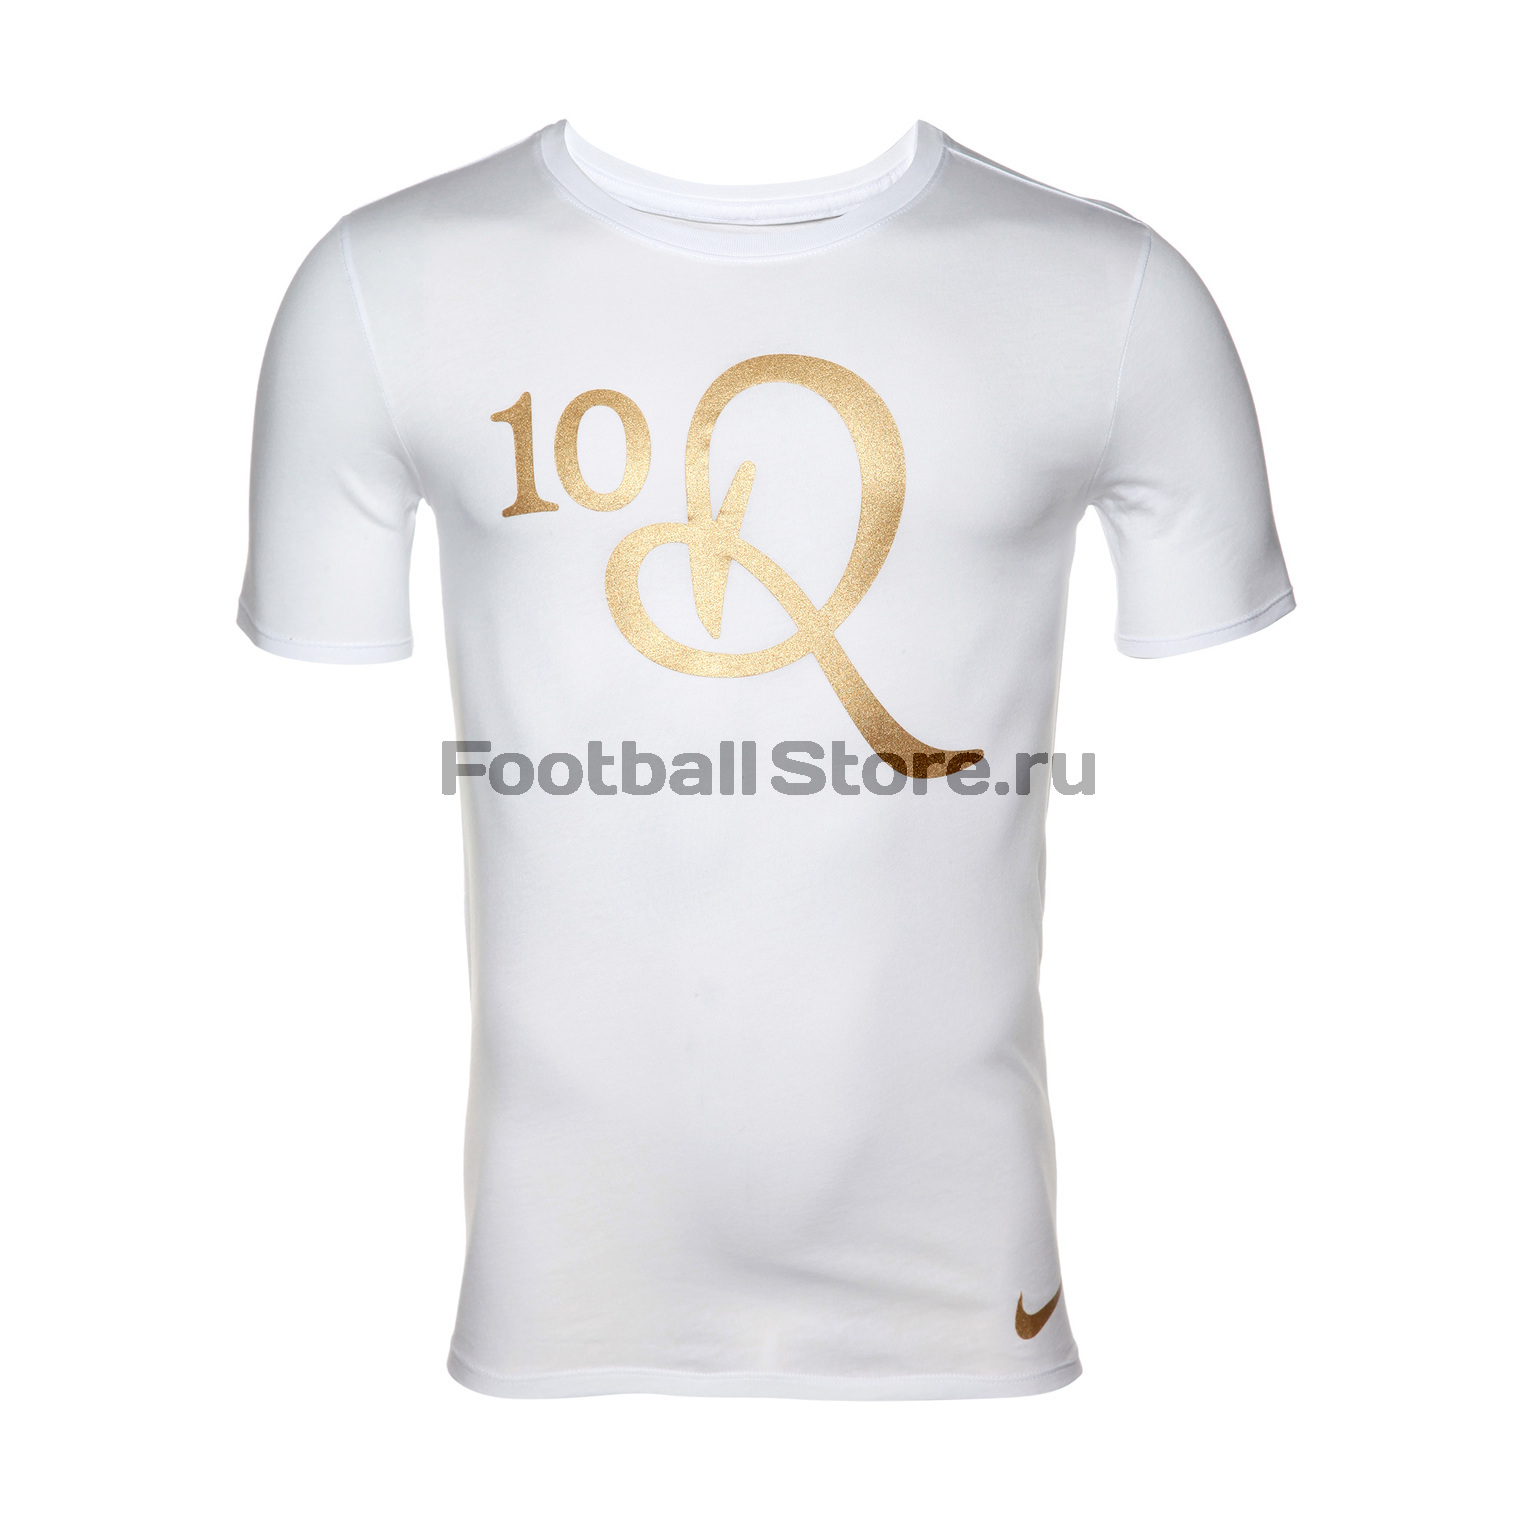 Футболка Nike Ronaldinho AV6342-100